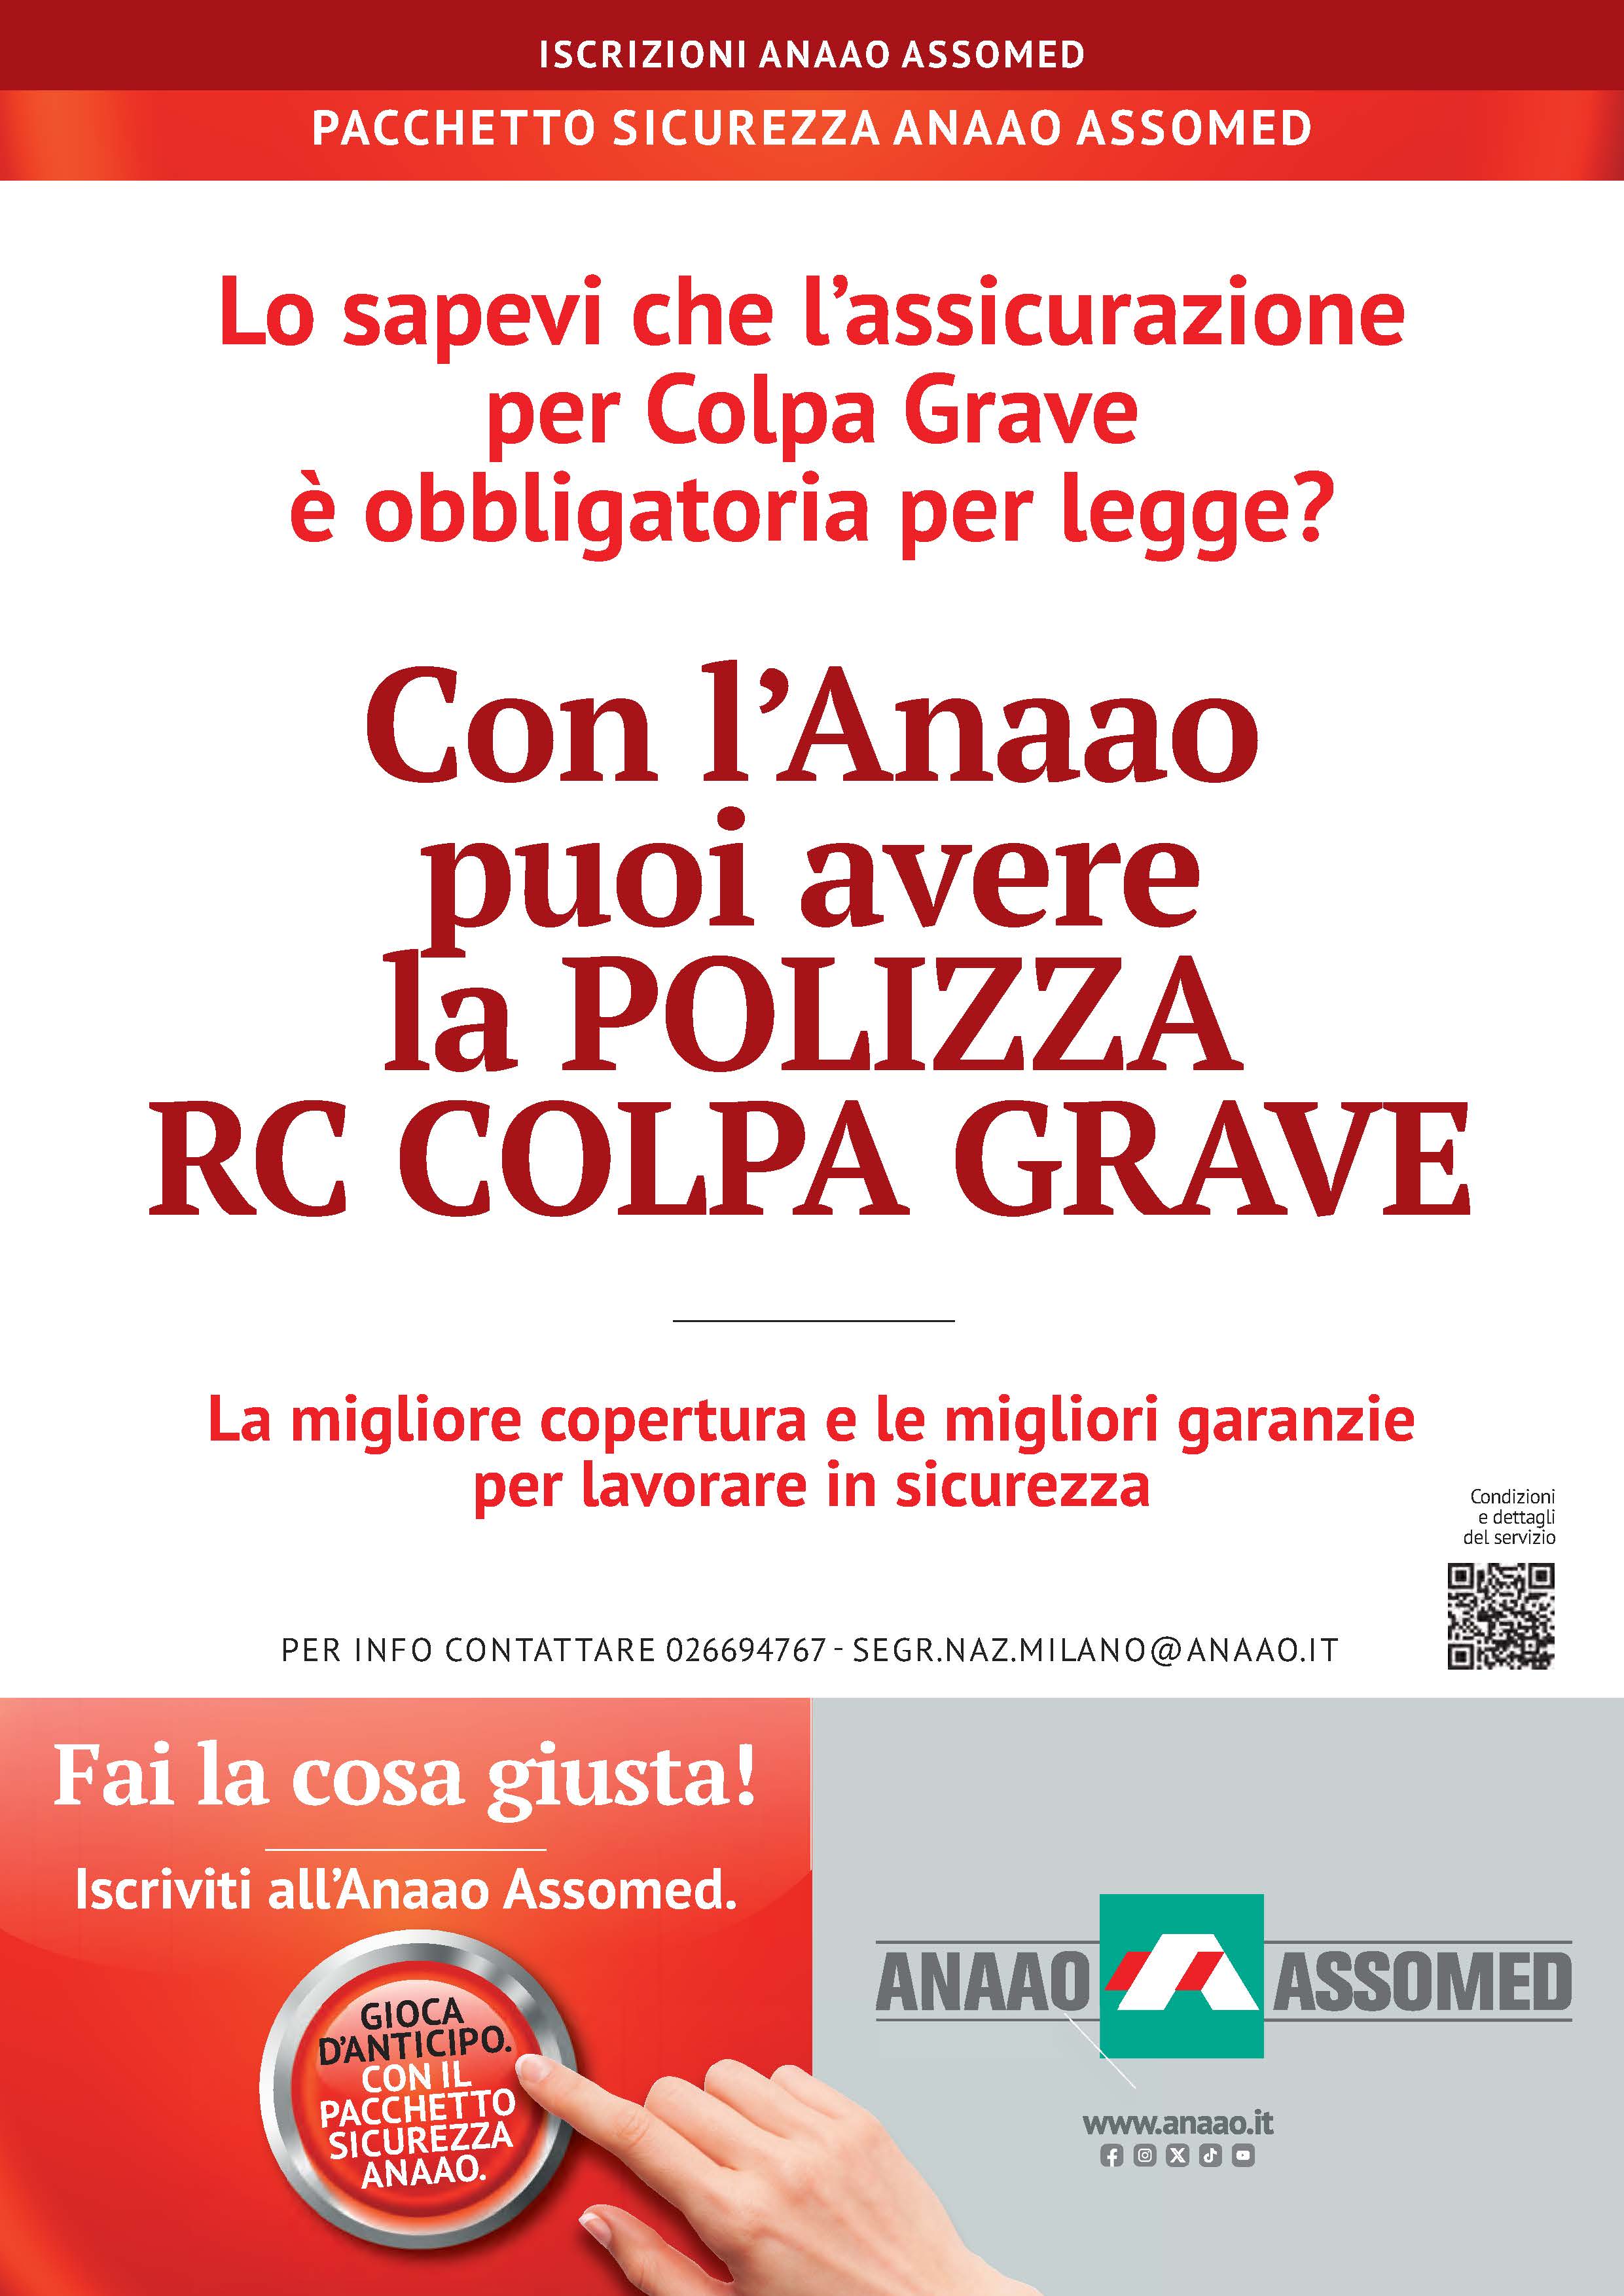 RC COLPA GRAVE